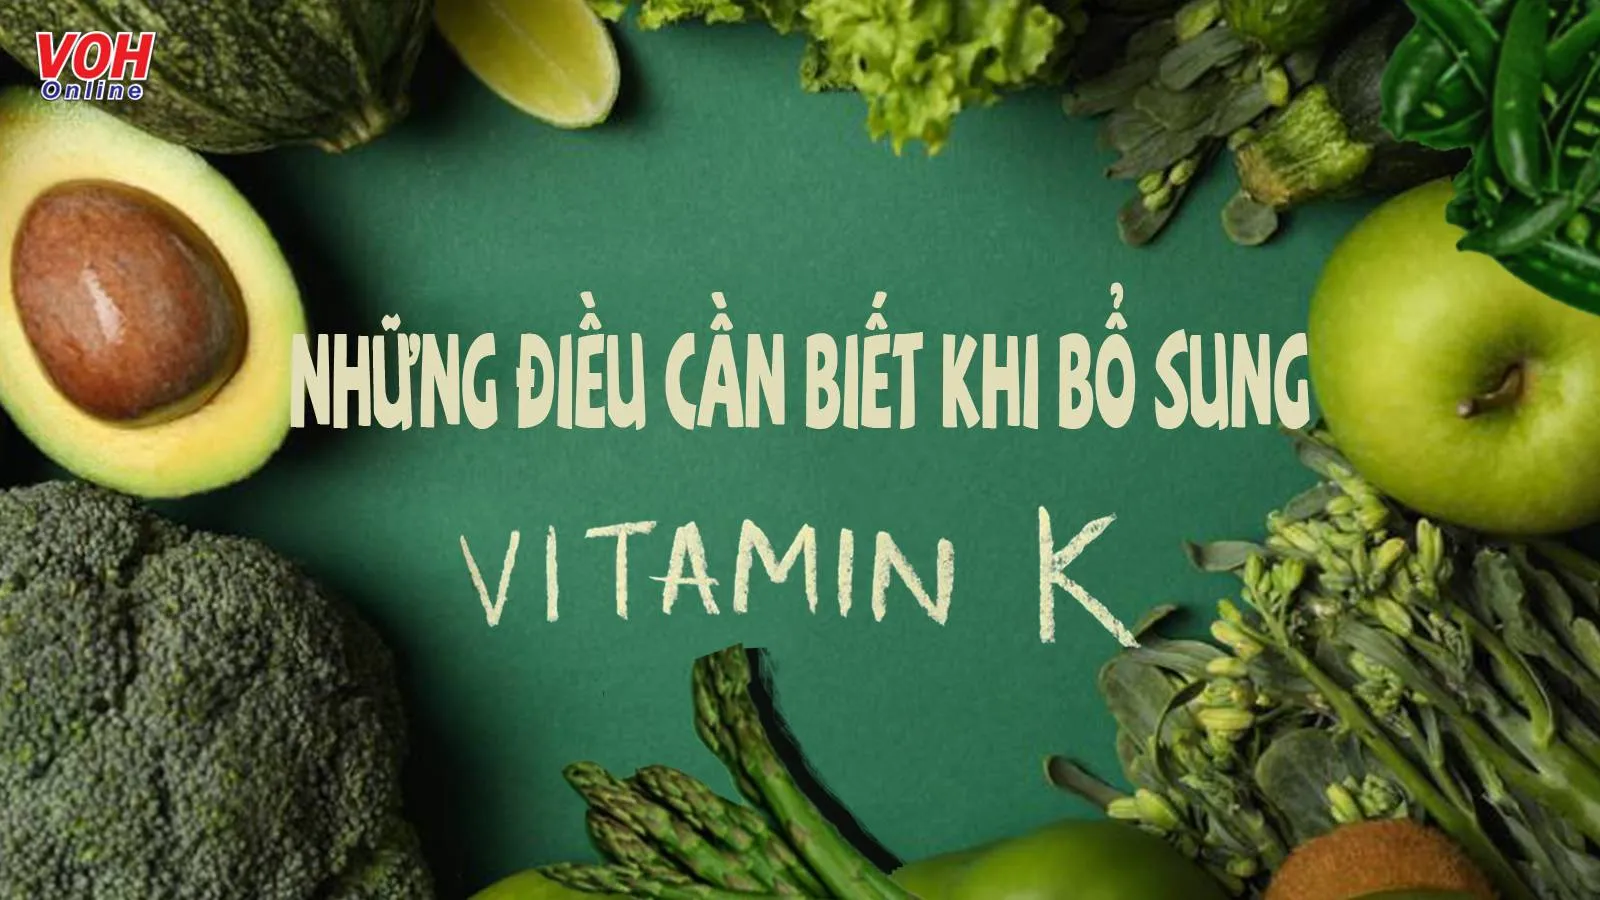 Bổ sung vitamin K bằng cách nào để an toàn cho sức khỏe?